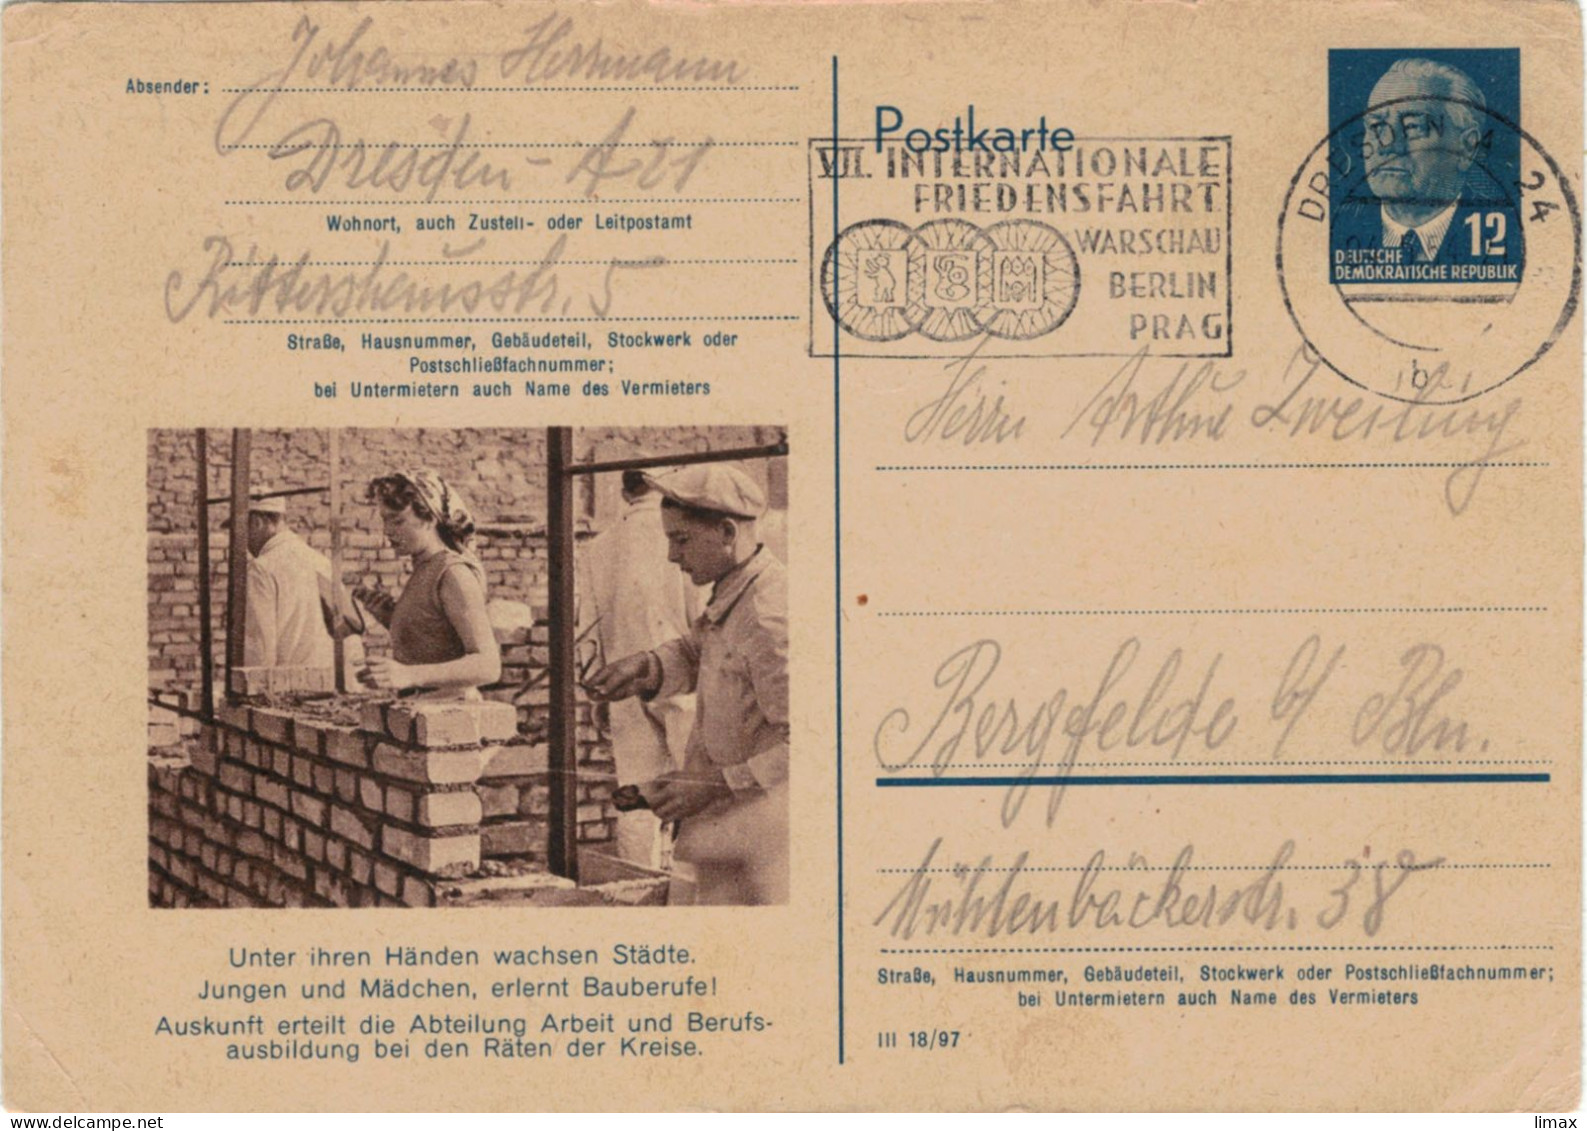 Niemand Hat Die Absicht, Eine Mauer Zu Errichten! - Berlin 1954 - Ganzsache Ziegel Maurer Mörtel DDR Pieck Friedensfahrt - Postcards - Used